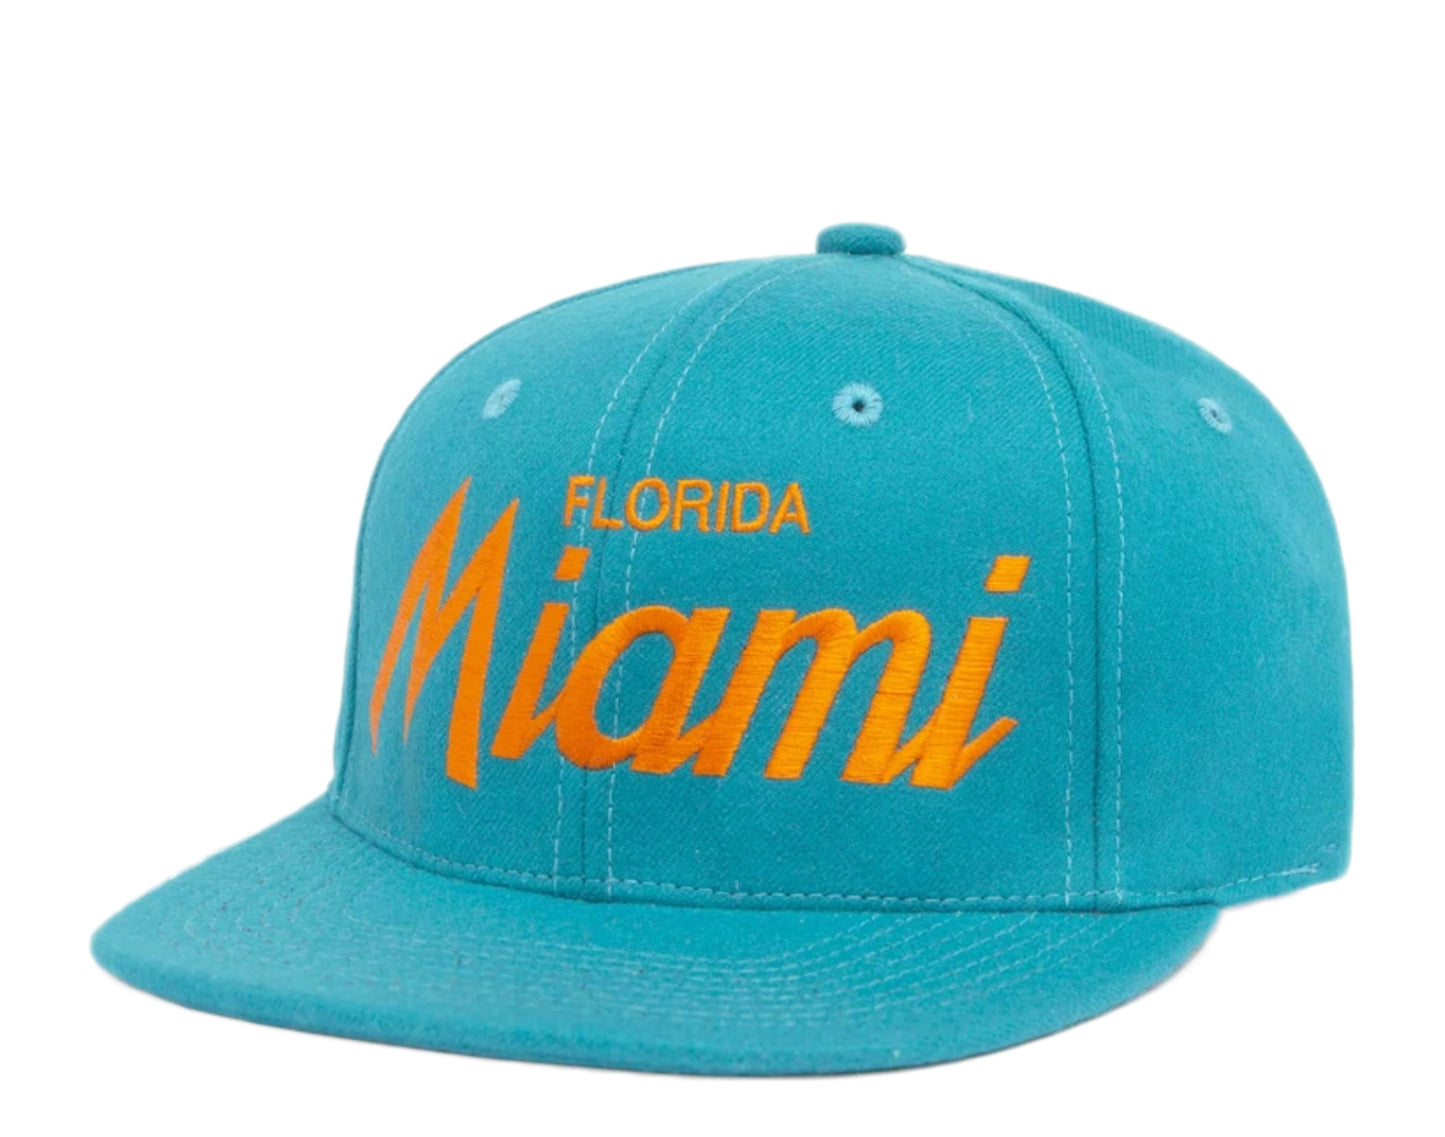 Hood Hat USA Miami FL Wool Snapback